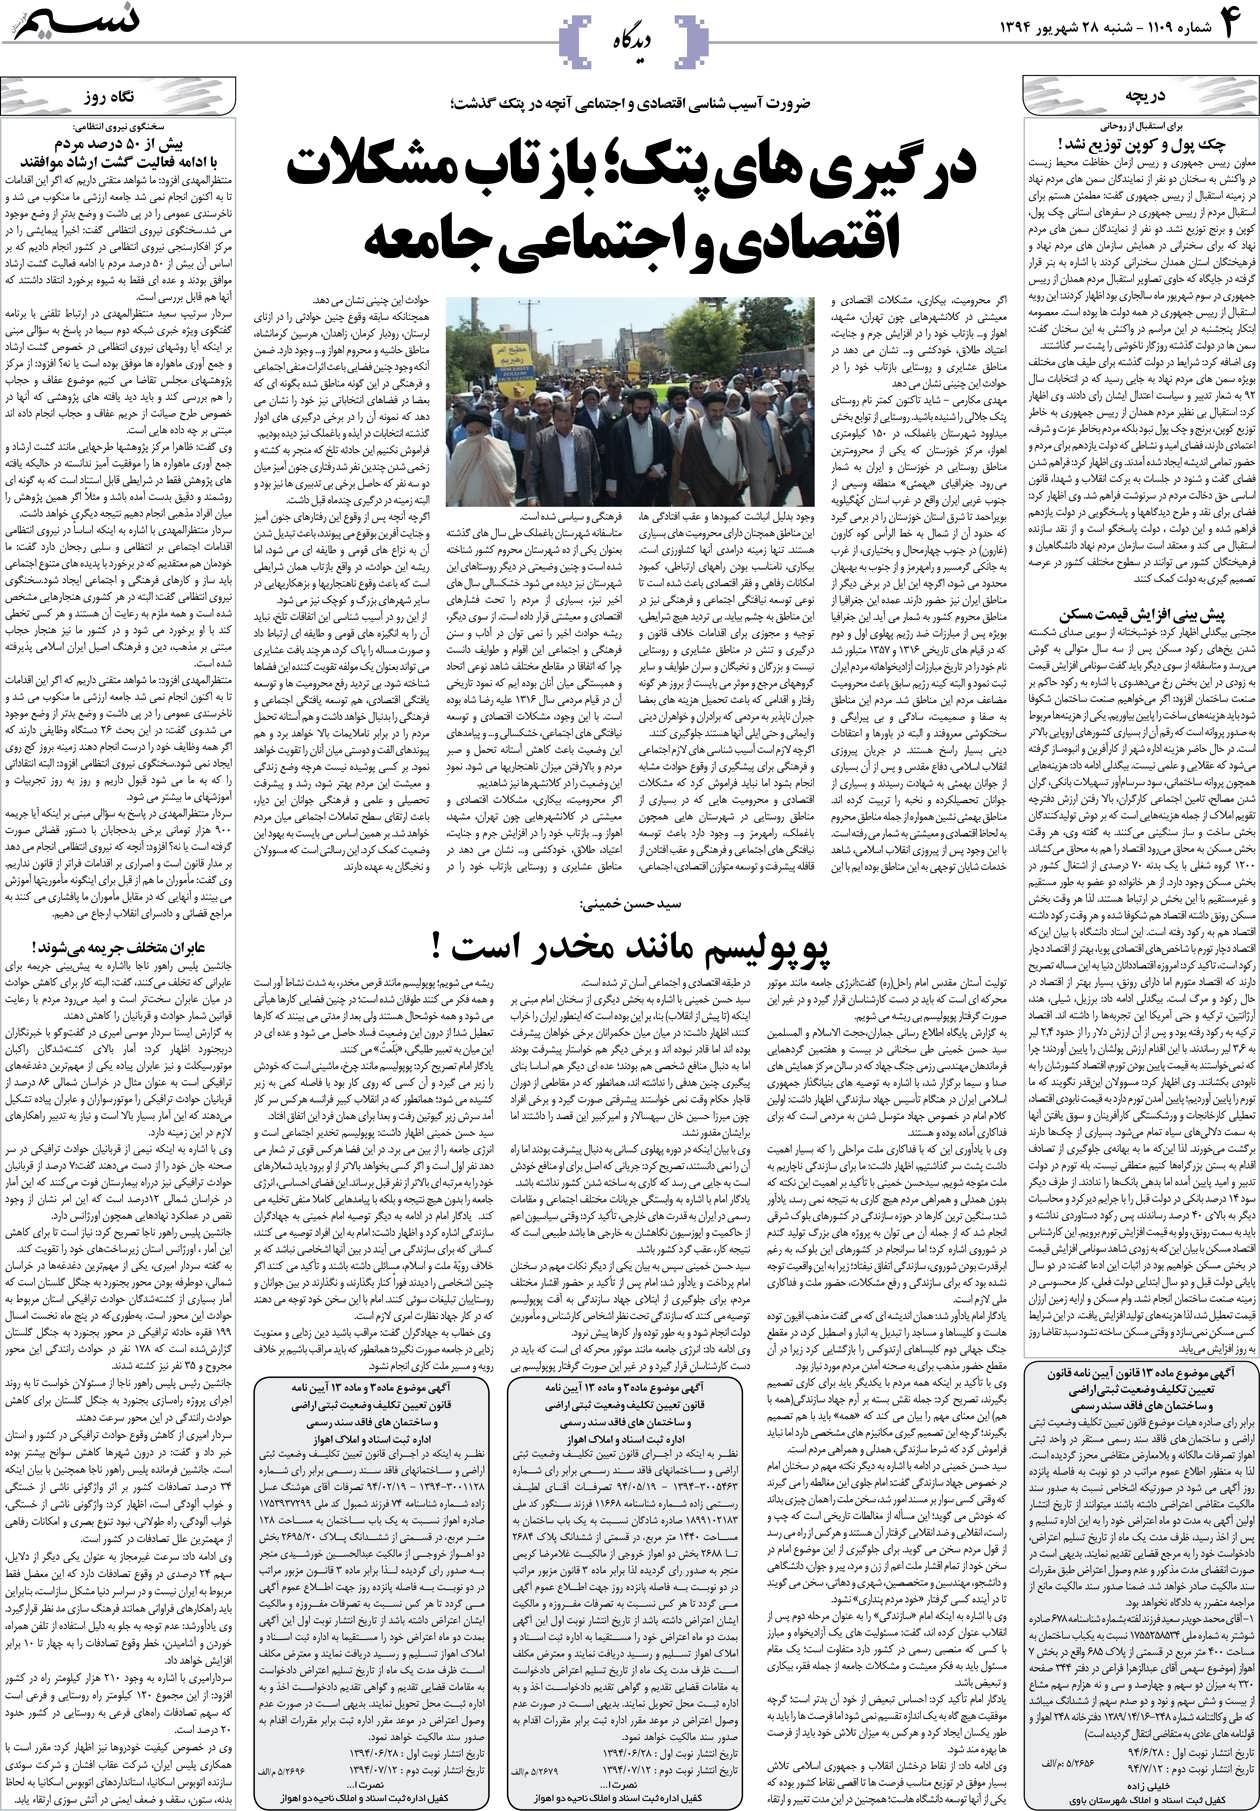 صفحه دیدگاه روزنامه نسیم شماره 1109